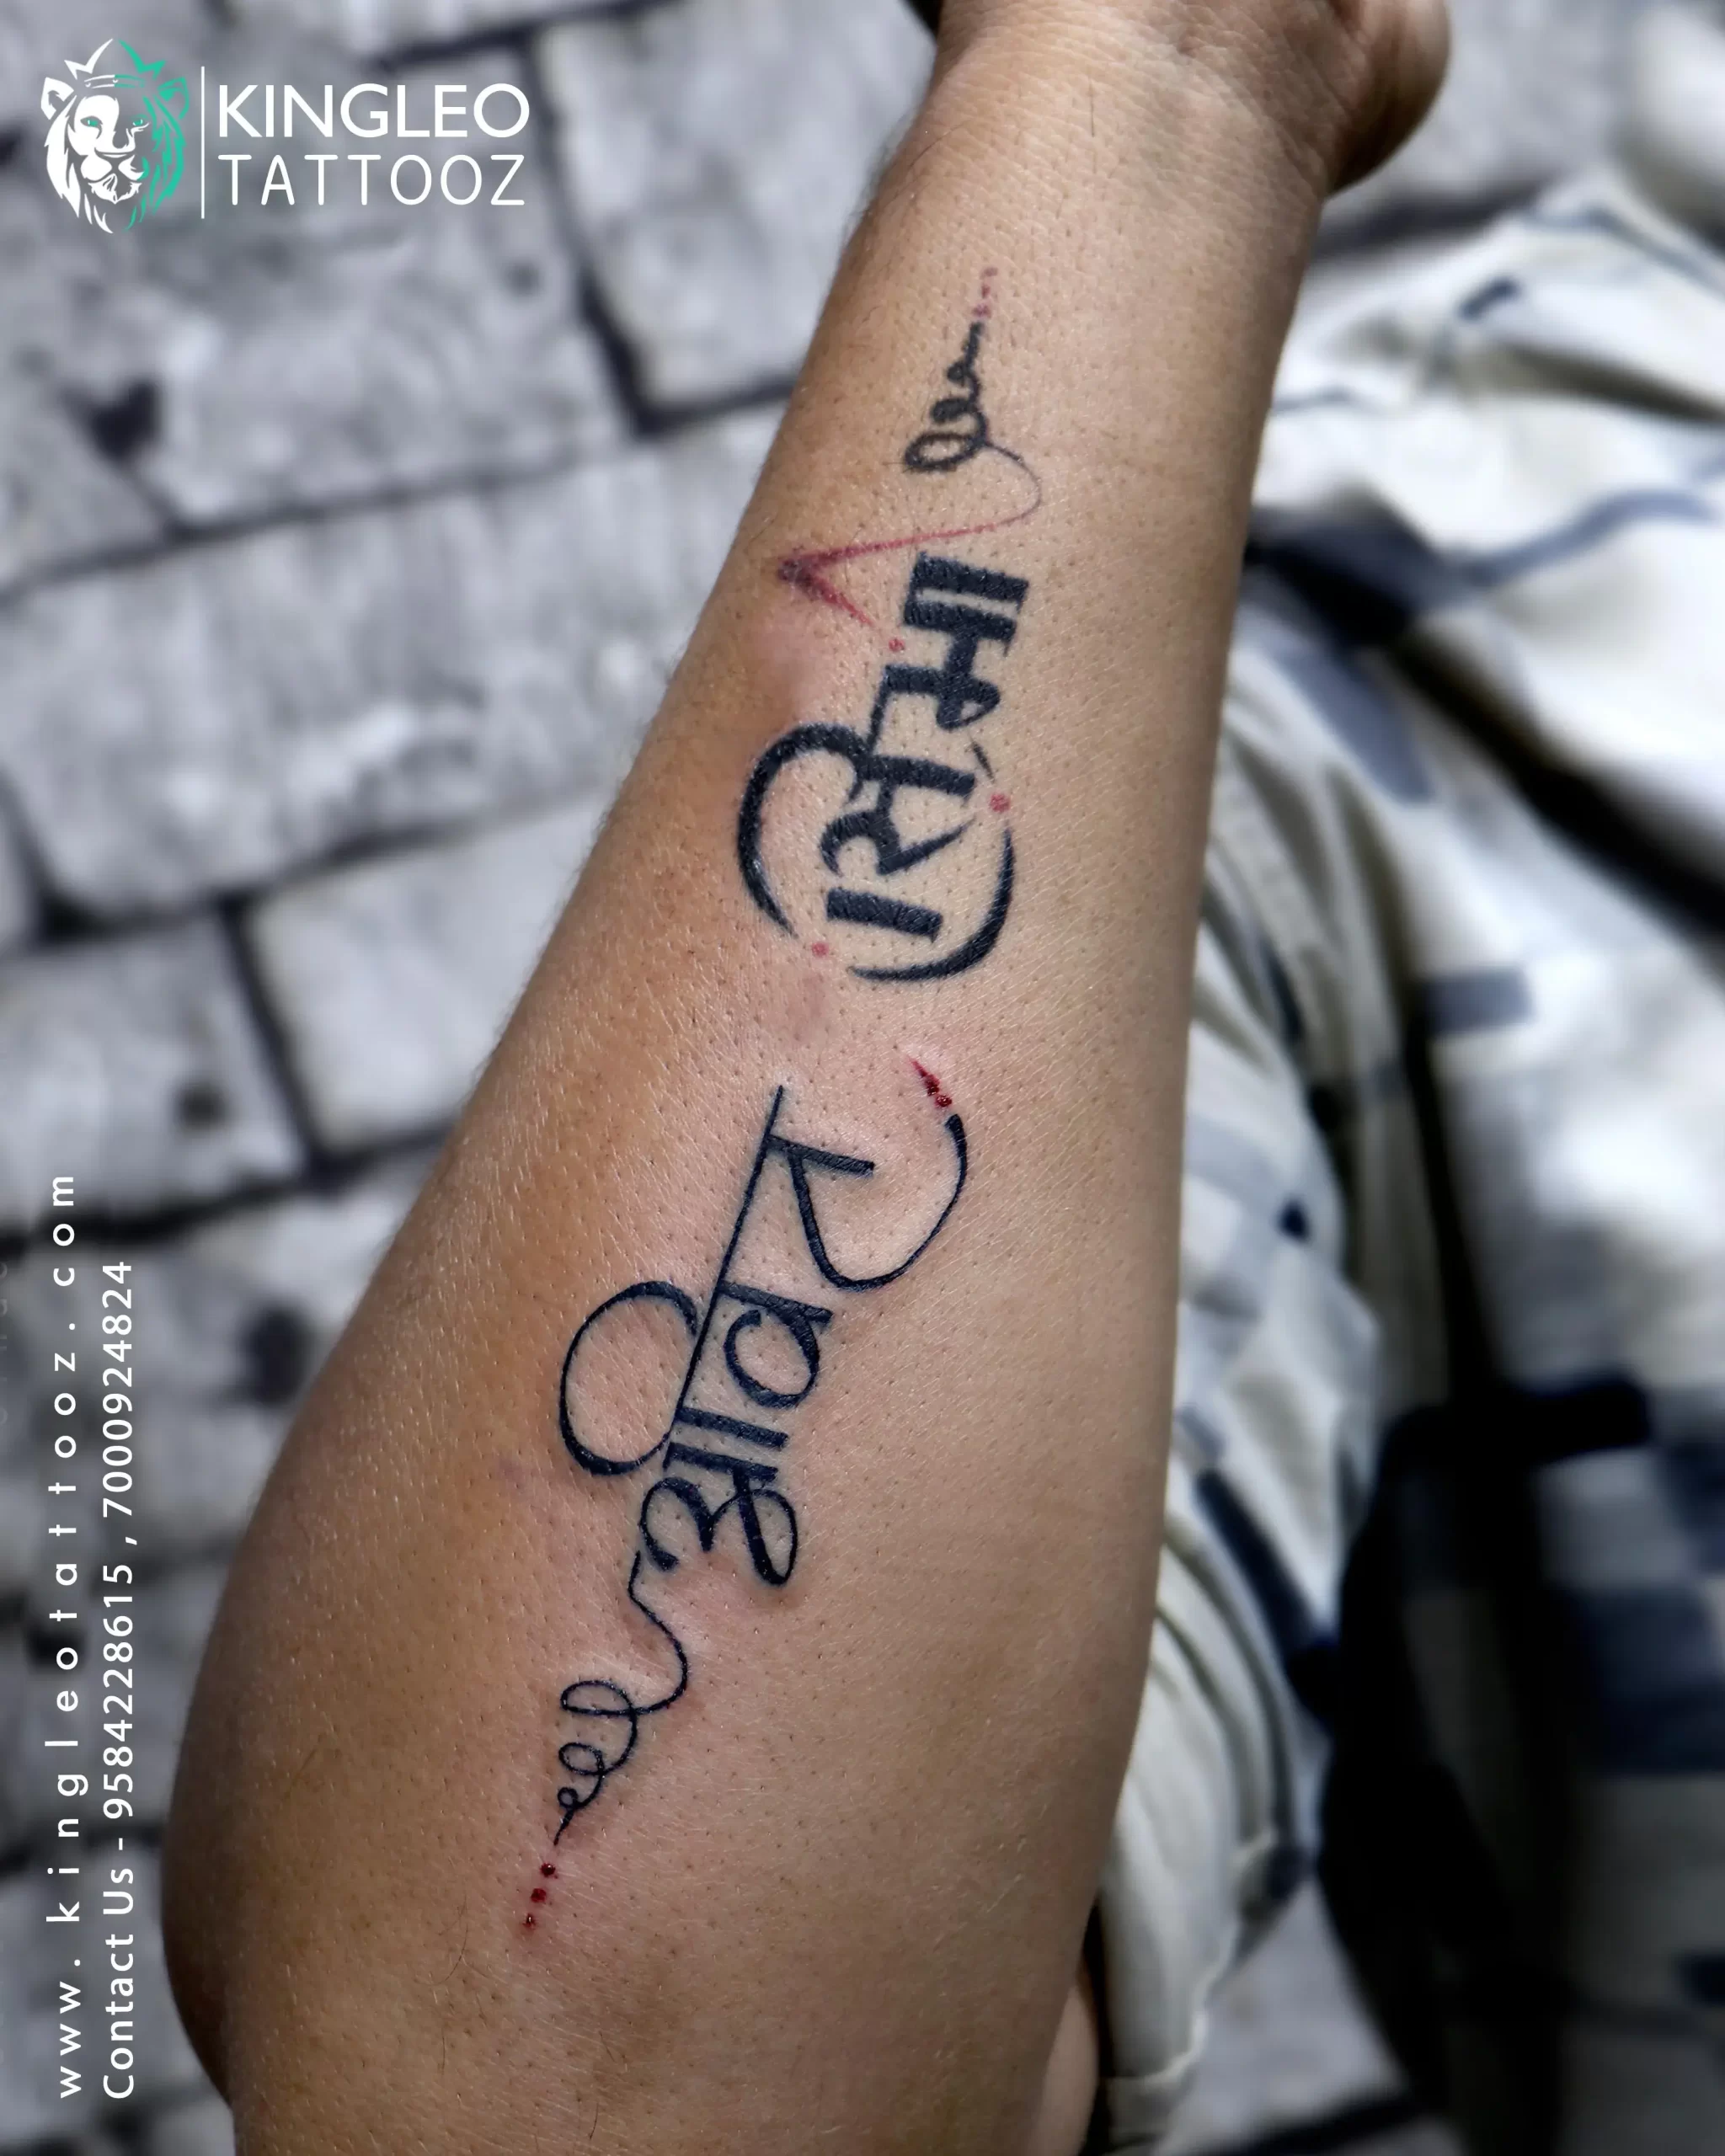 Temporary Tattoowala Kshatriya Knife Men and Women Temporary Body Tattoo